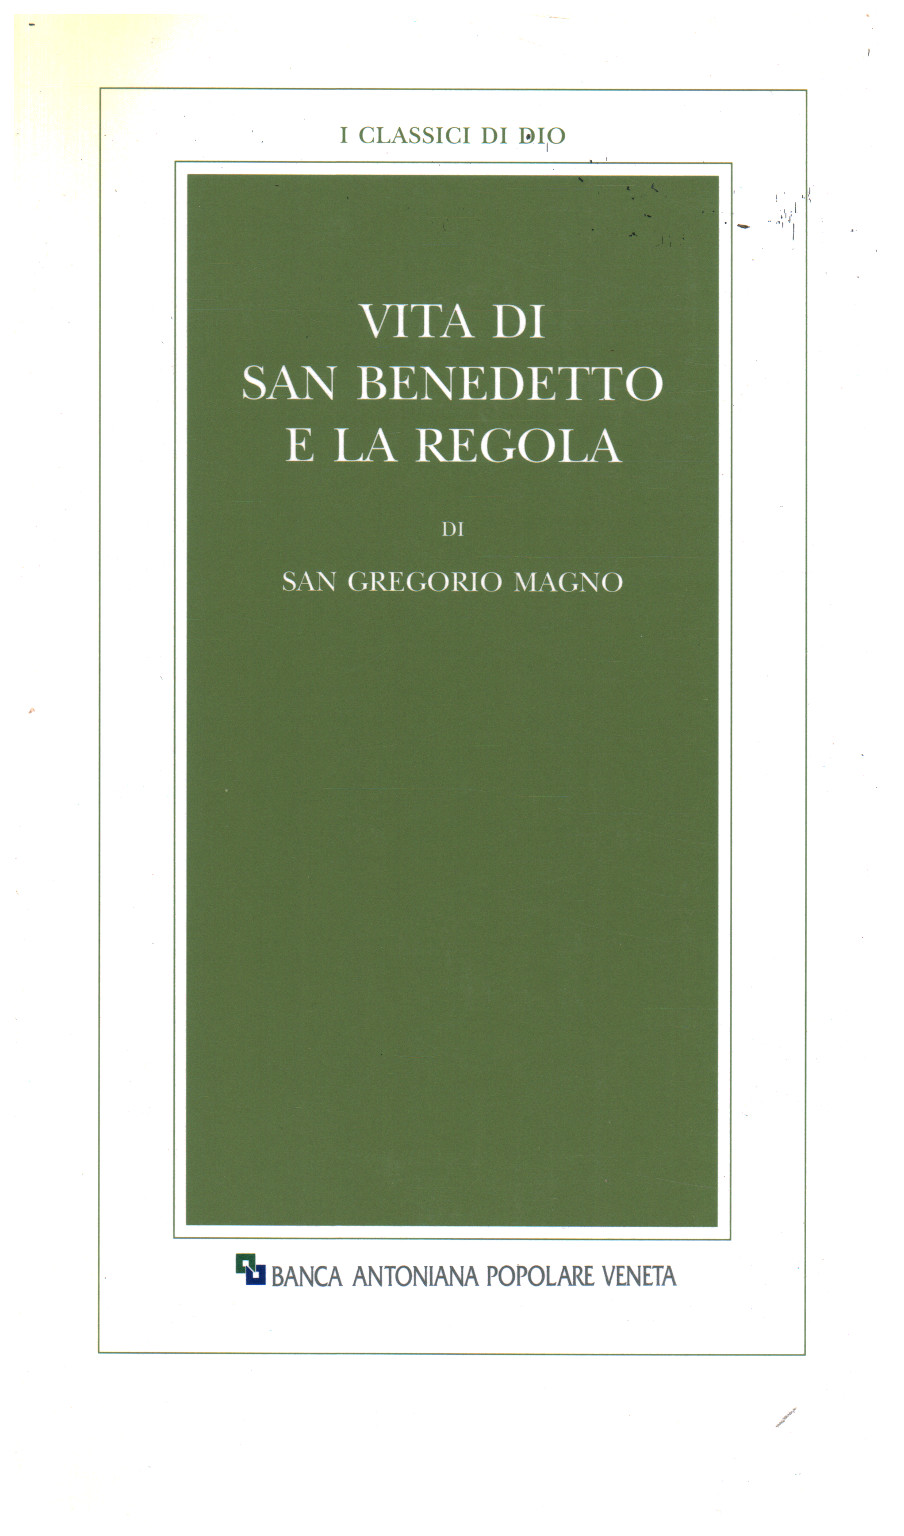 Vita di San Benedetto e la regola, s.a.